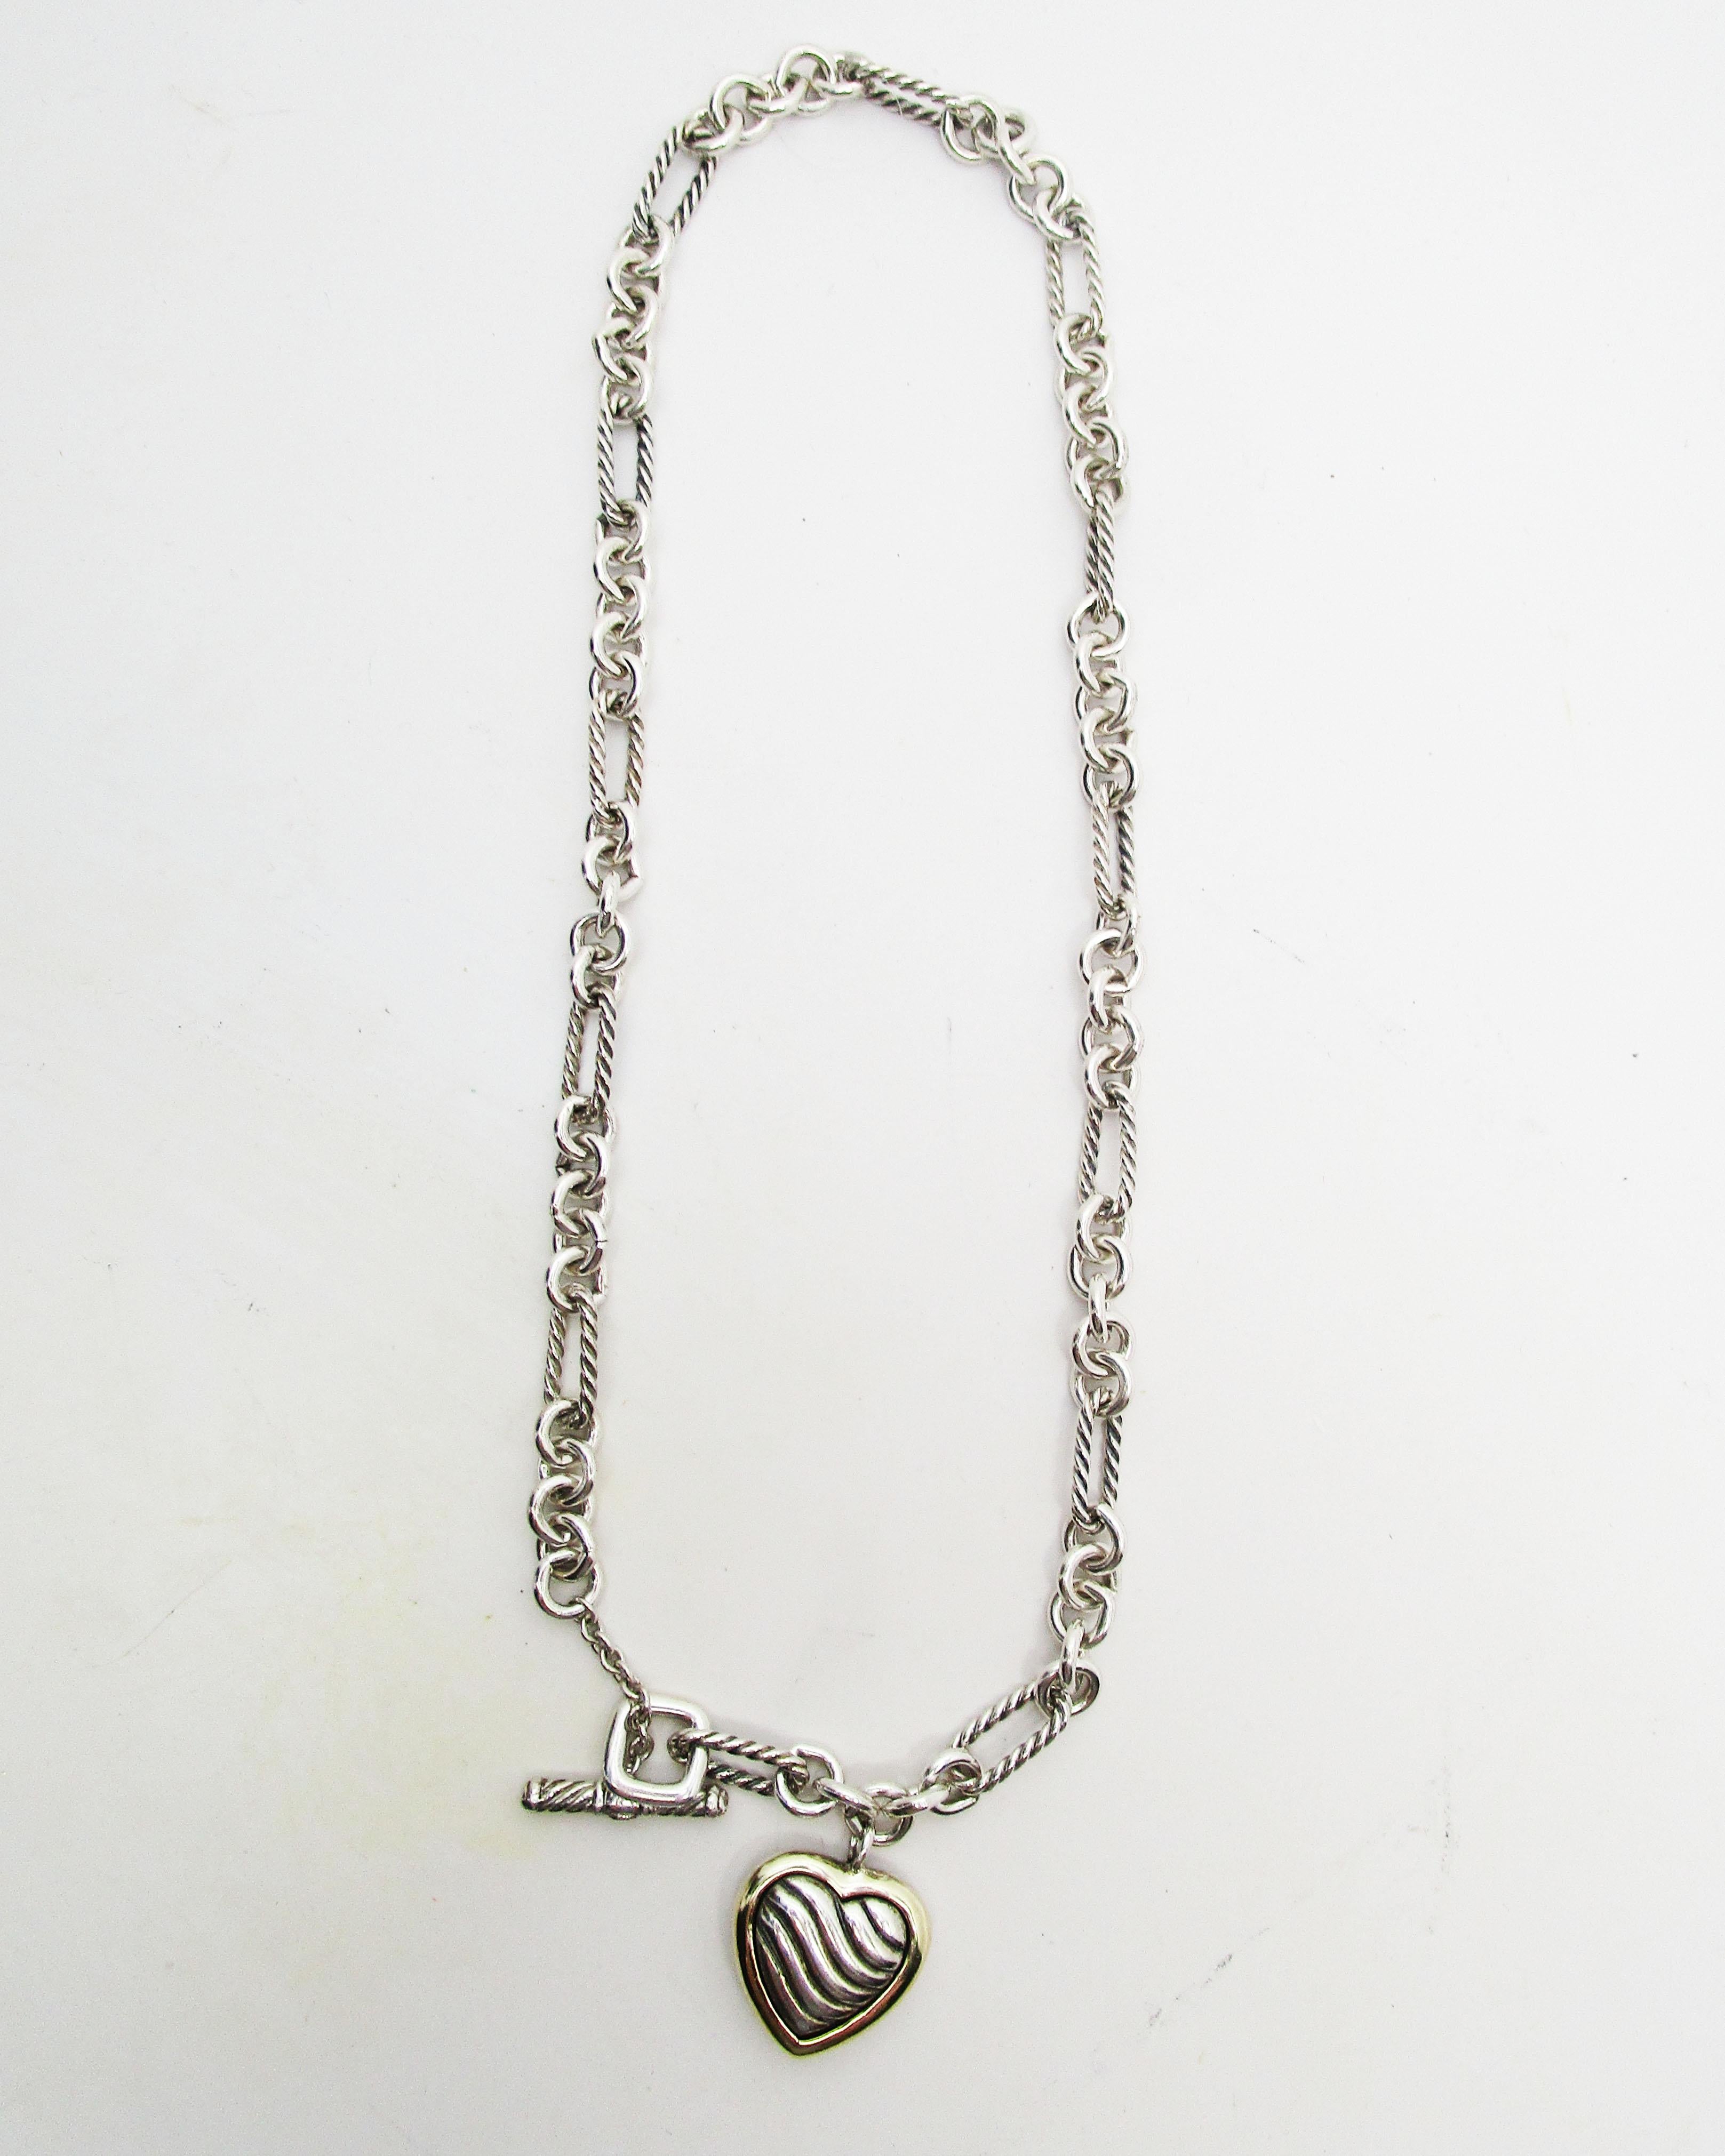 18 karat silver chain